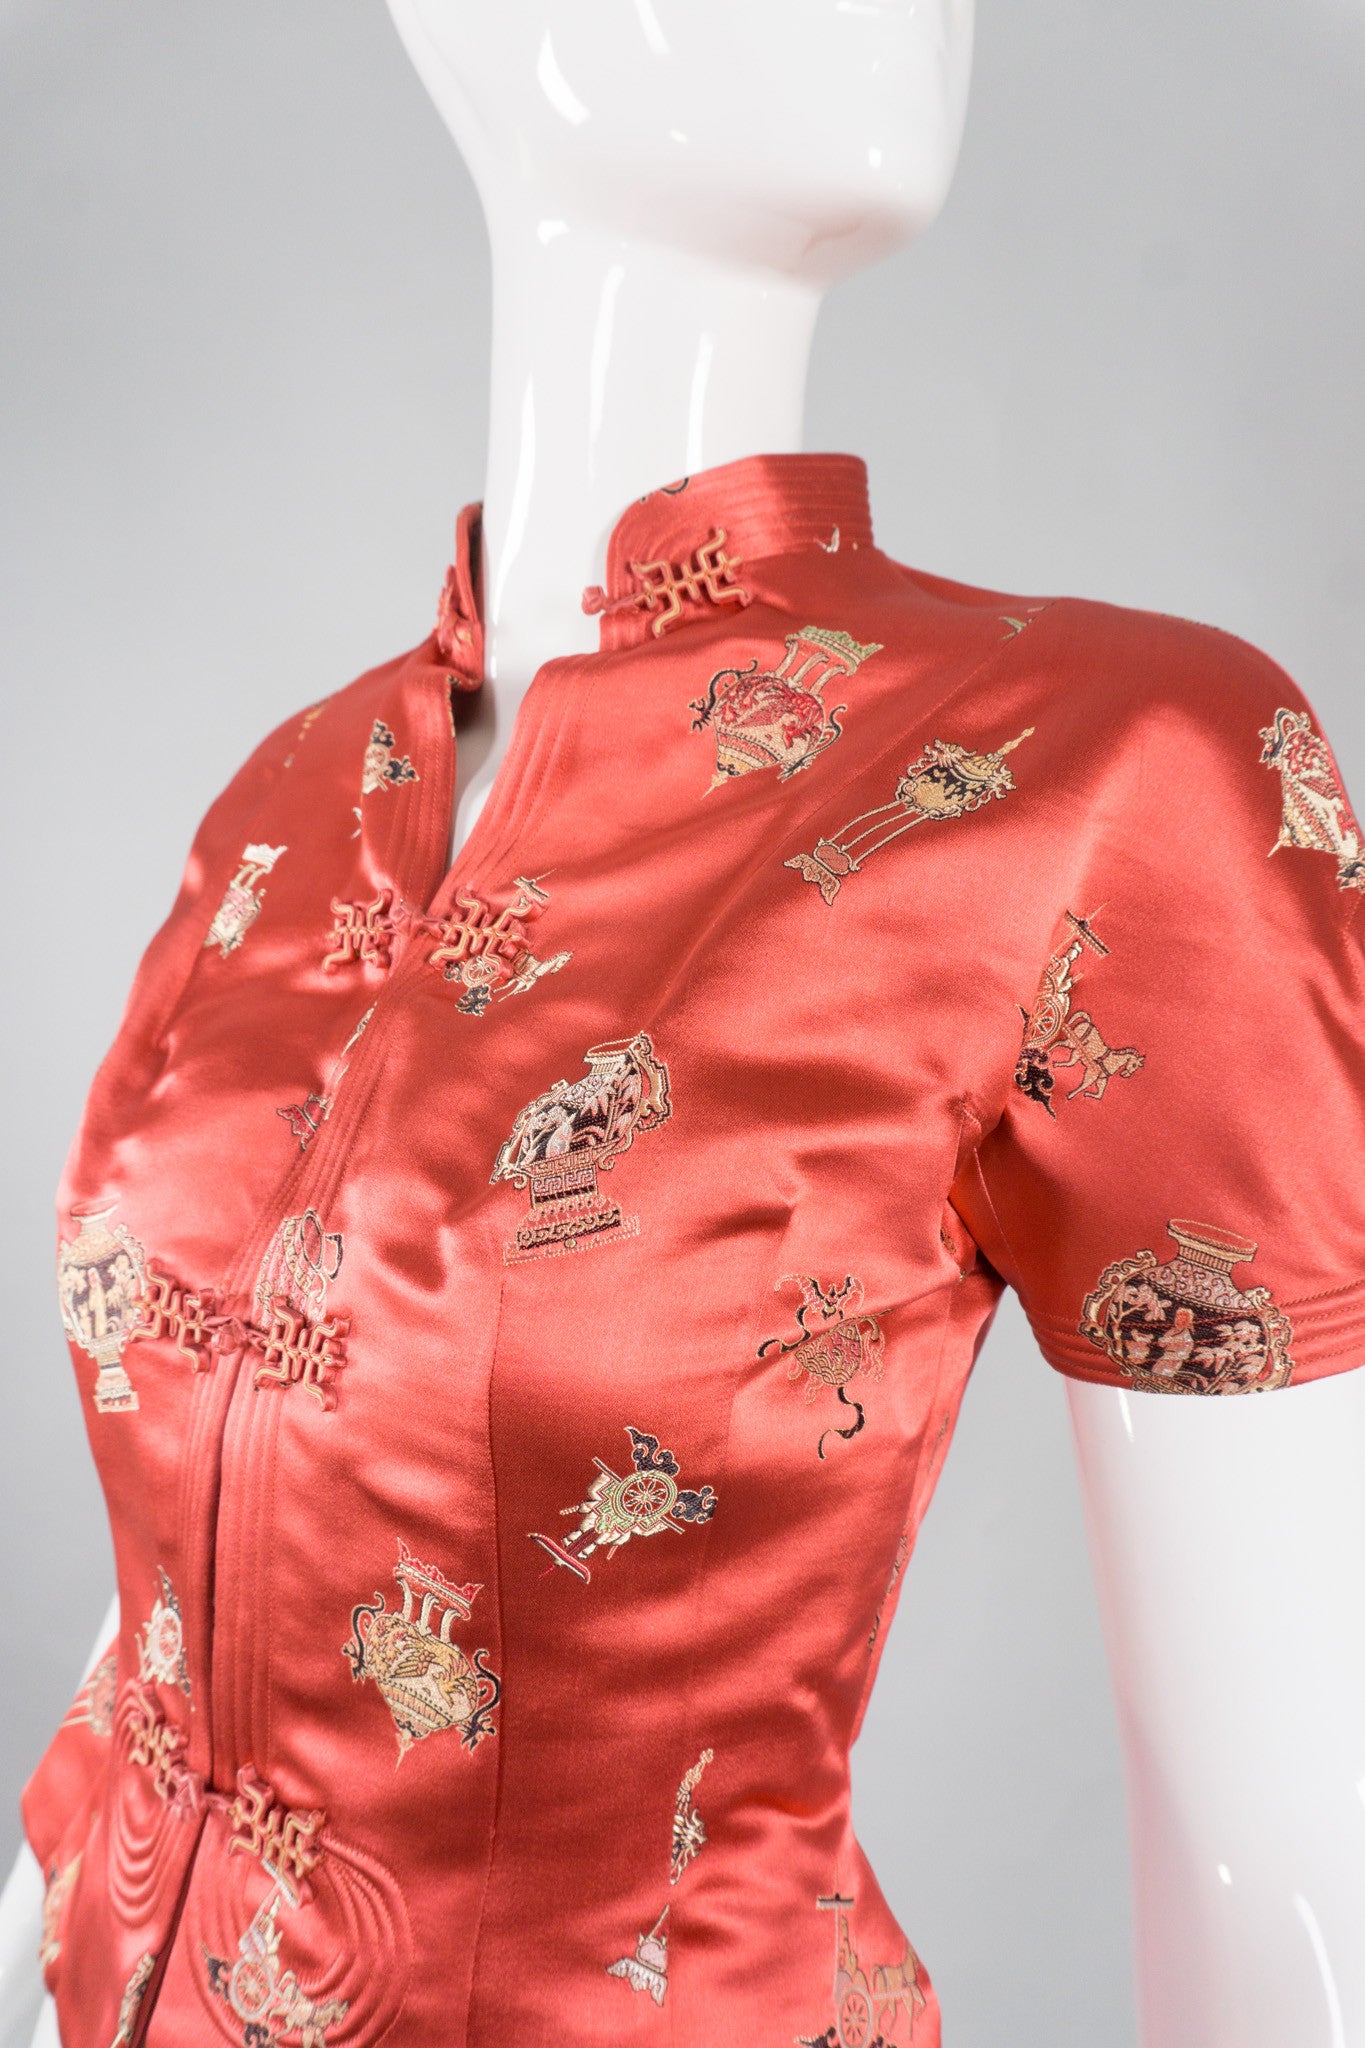 Alexander Imports Vintage Fitted Satin Mandarin Vase Jacket